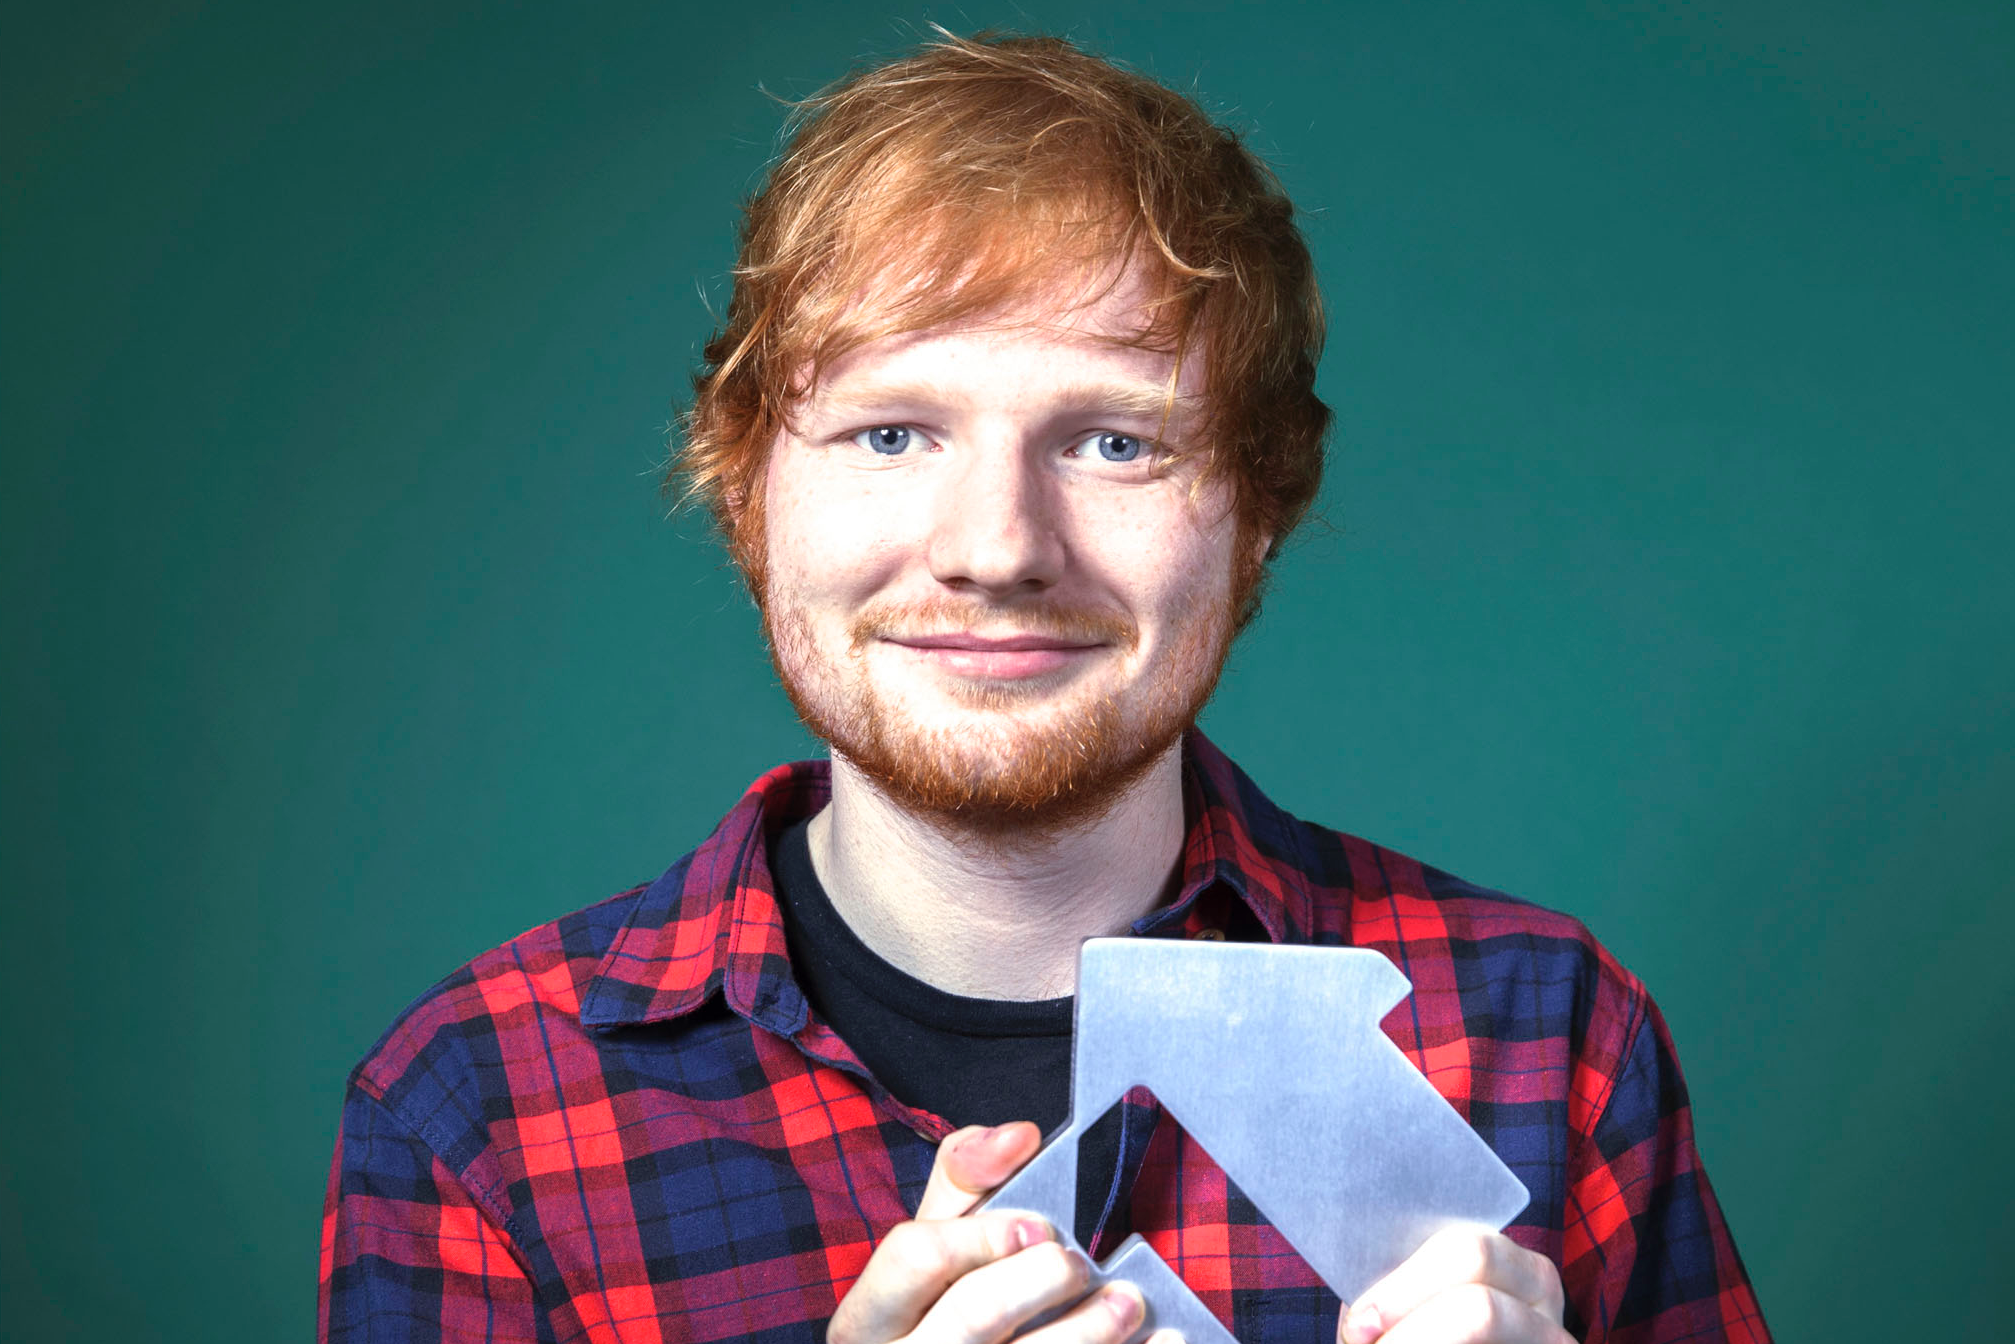 Ed Sheeran is still smashing Spotify charts with 5 weeks at No. 1